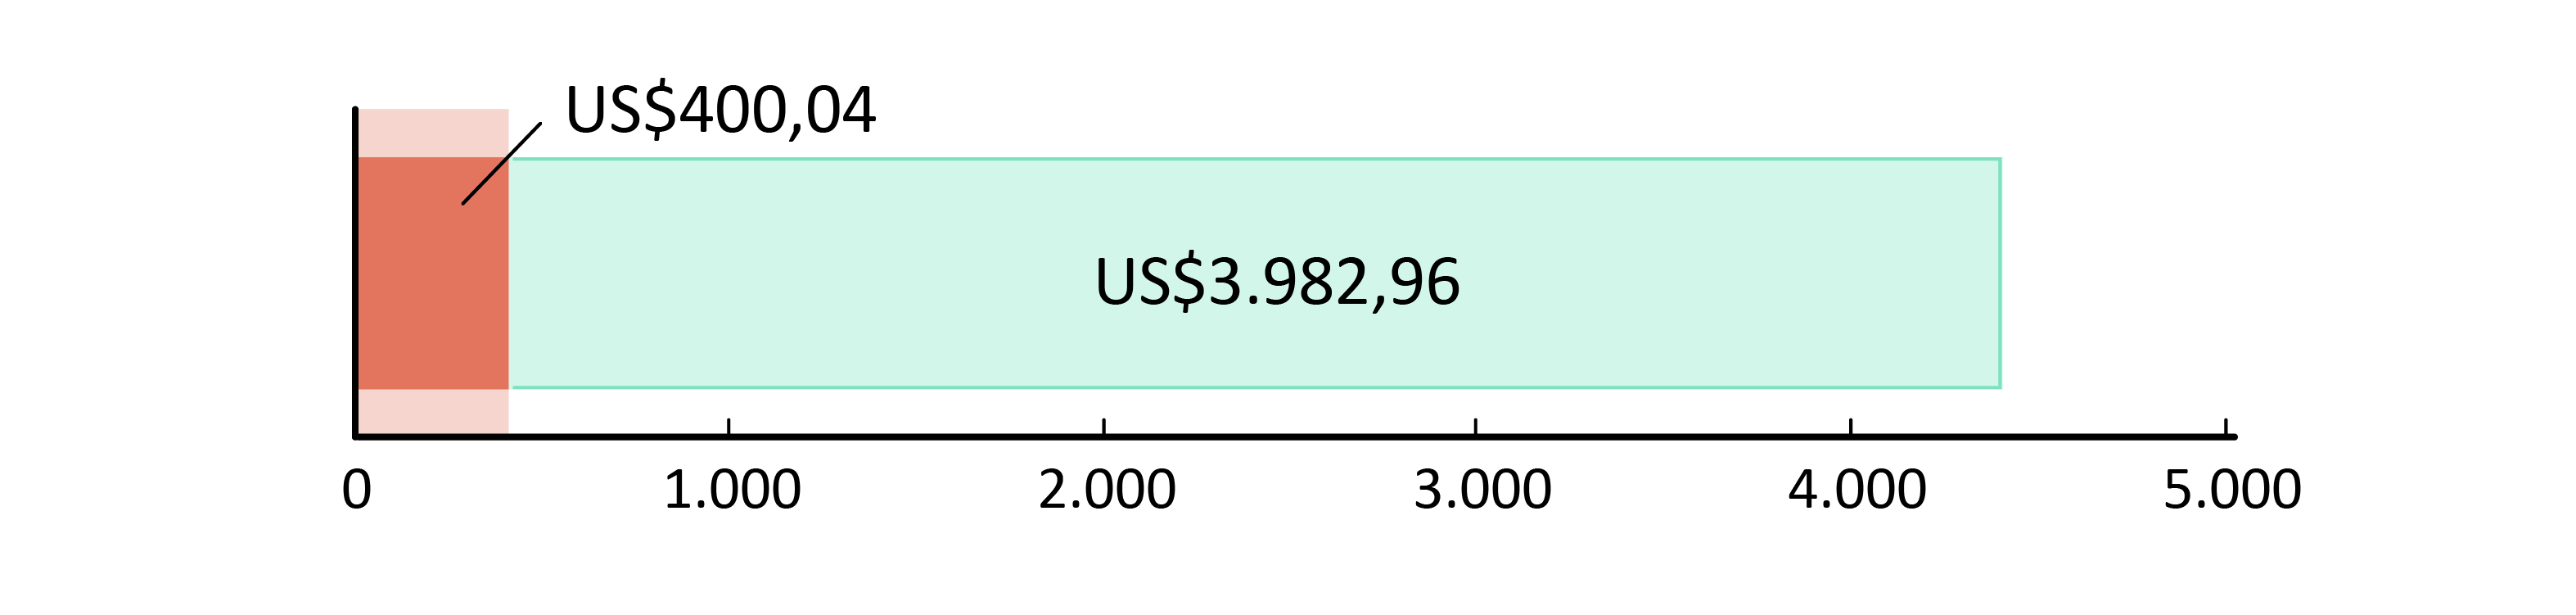 US$400,04 gastos; US$3.982,96 em caixa